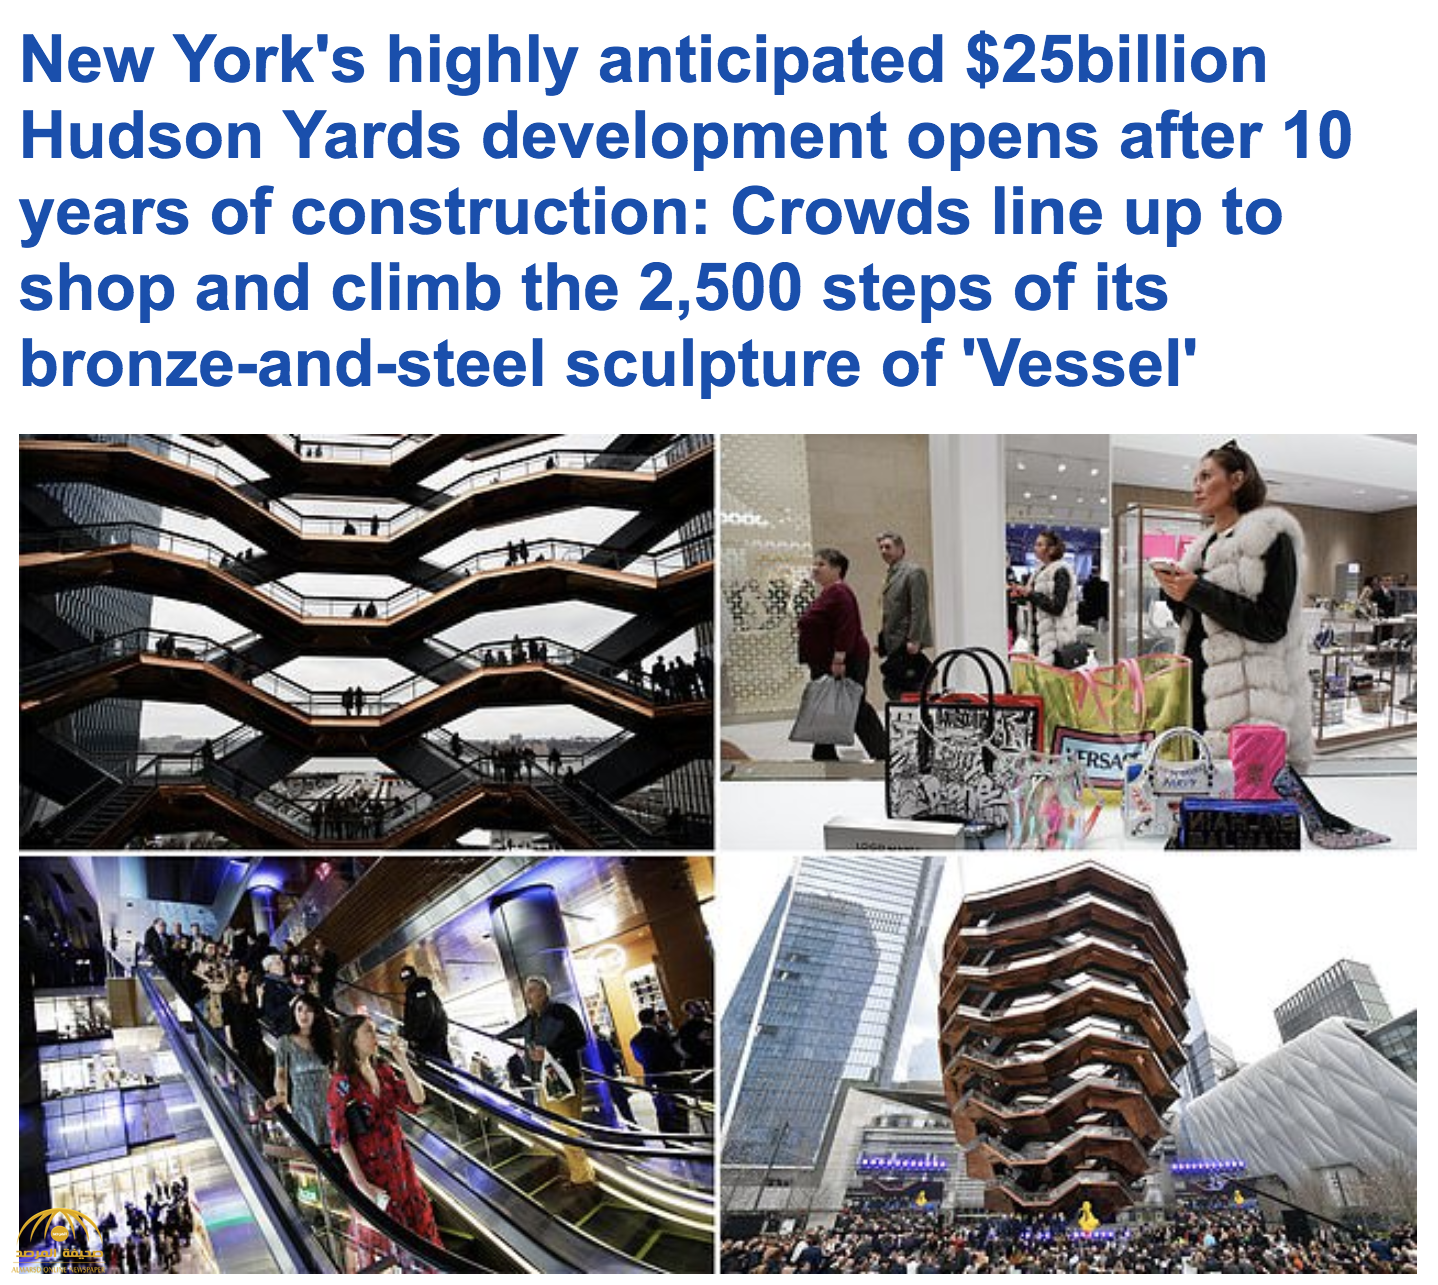 شاهد بالصور : افتتاح مشروع هدسون ياردز الذي تبلغ تكلفته 25 مليار دولار في نيويورك